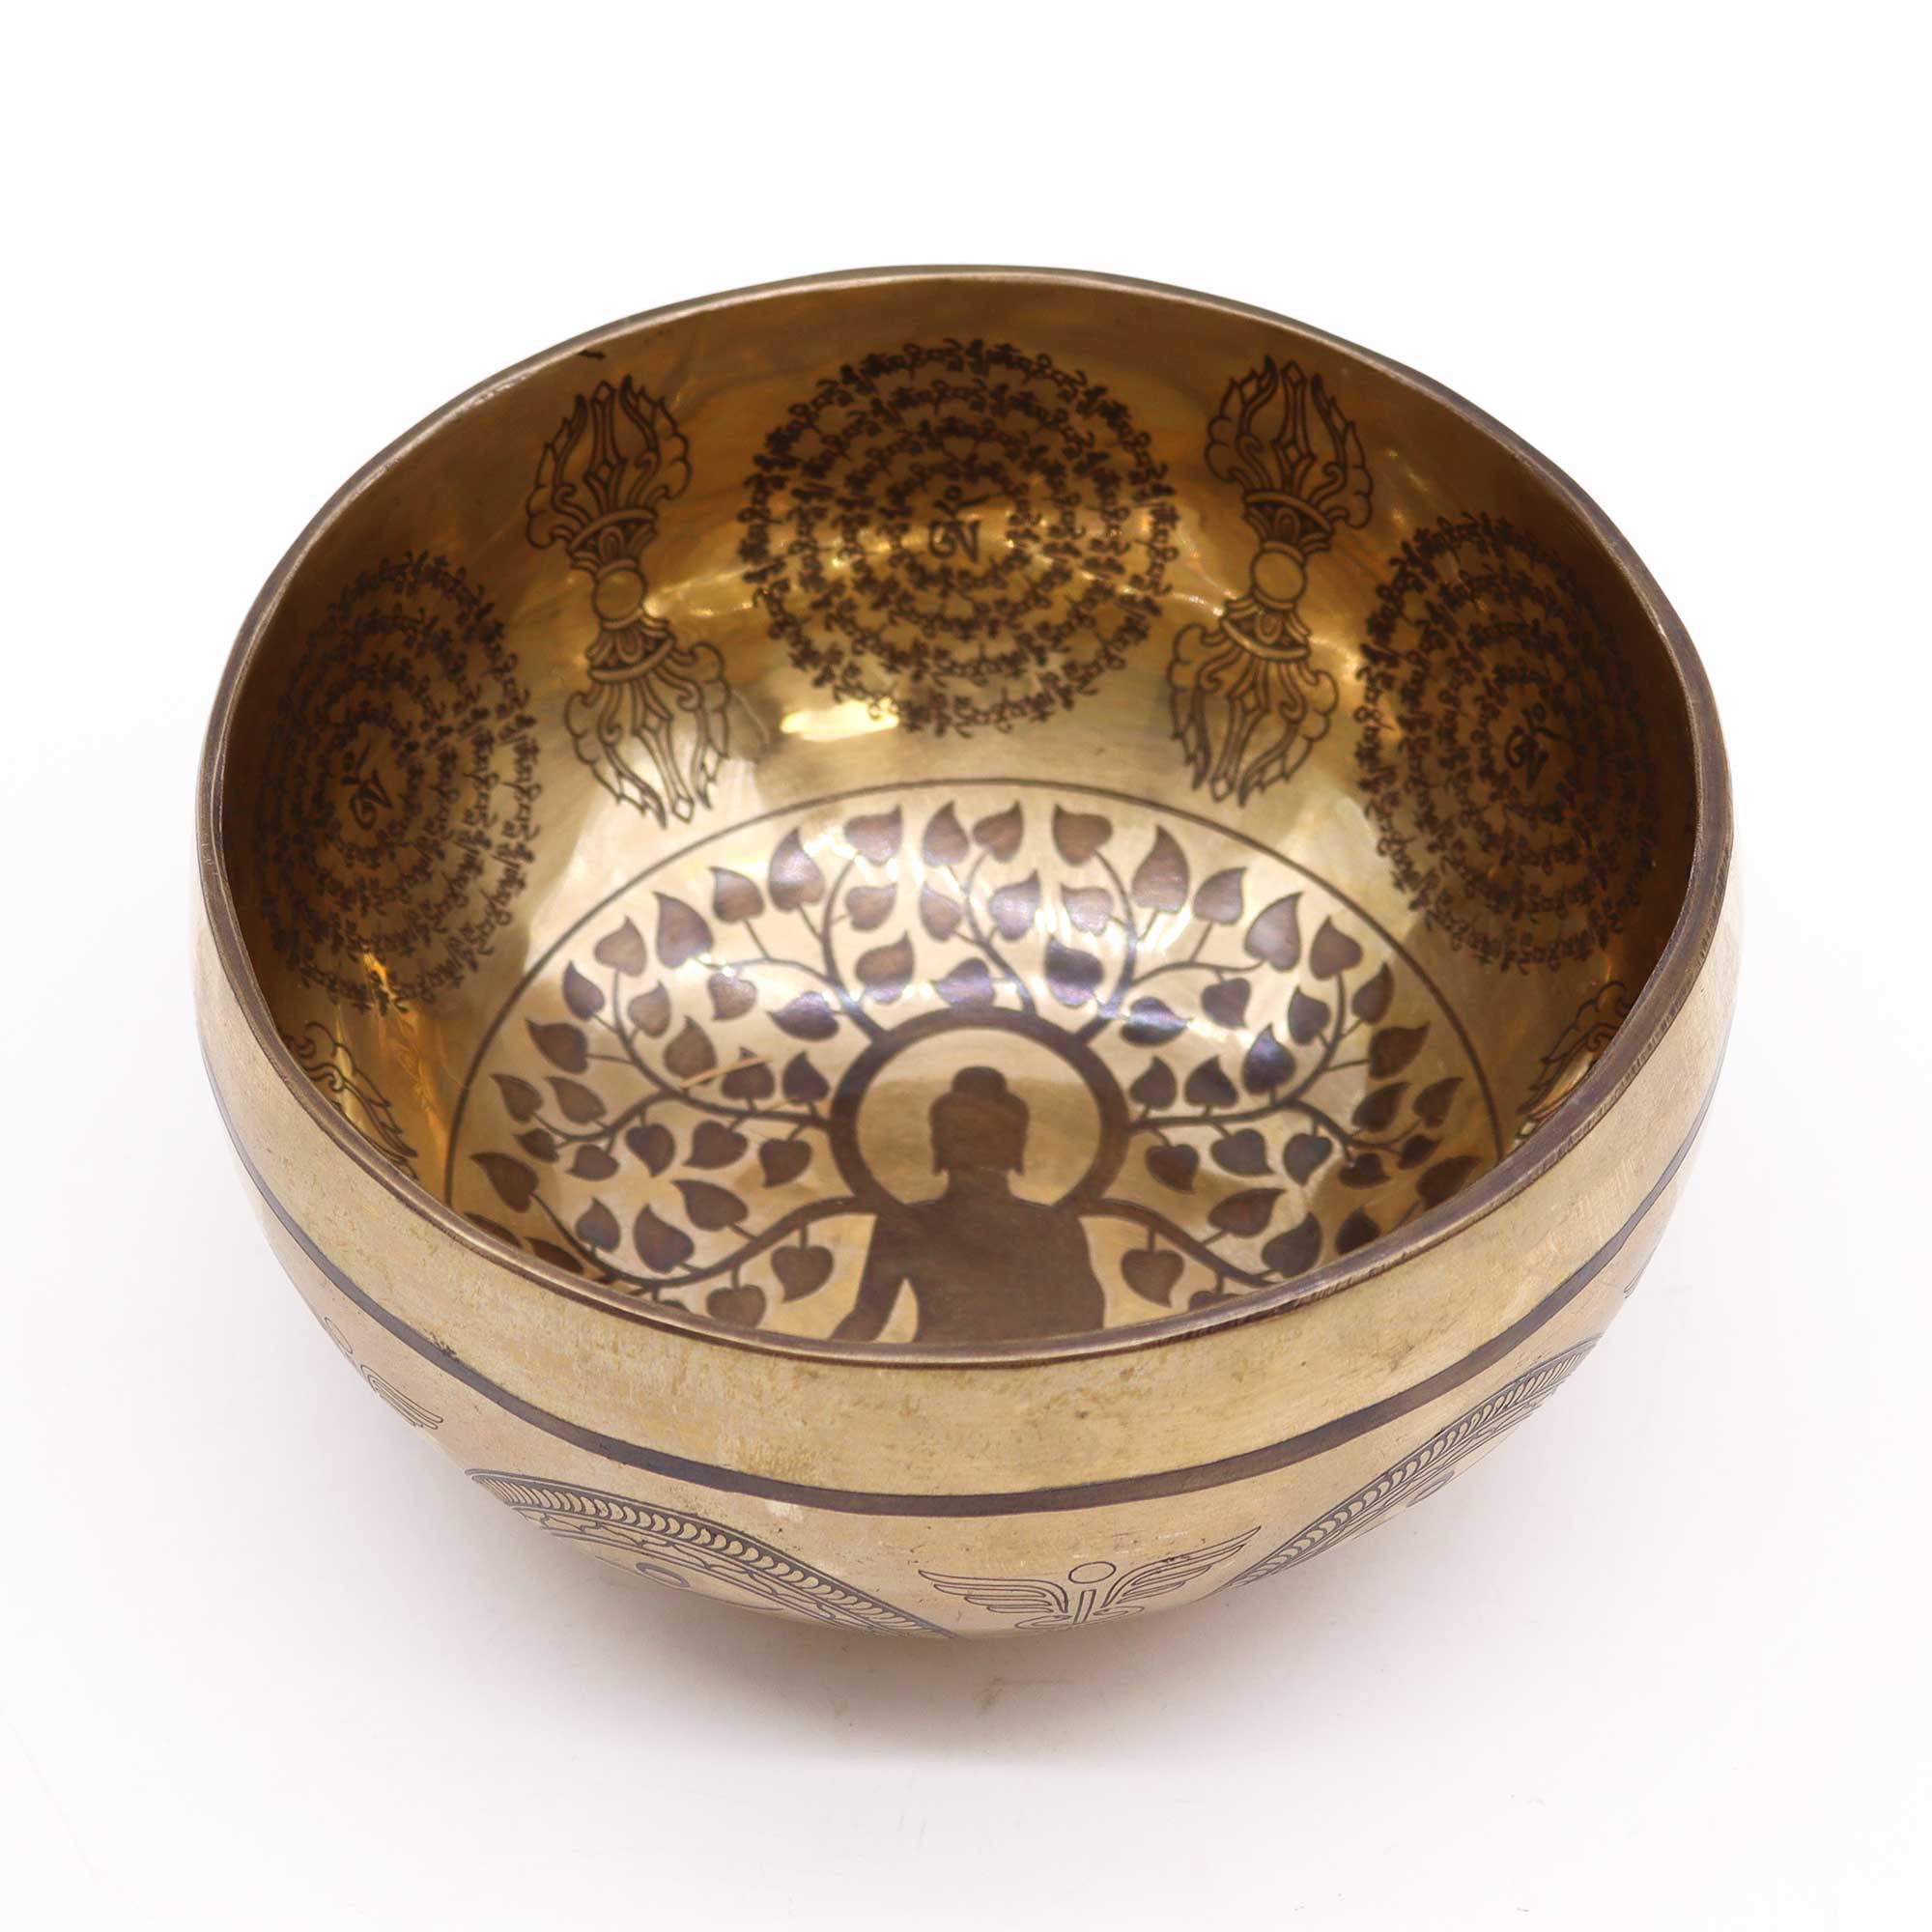 Tibetan Healing Engraved Bowl - 6.3